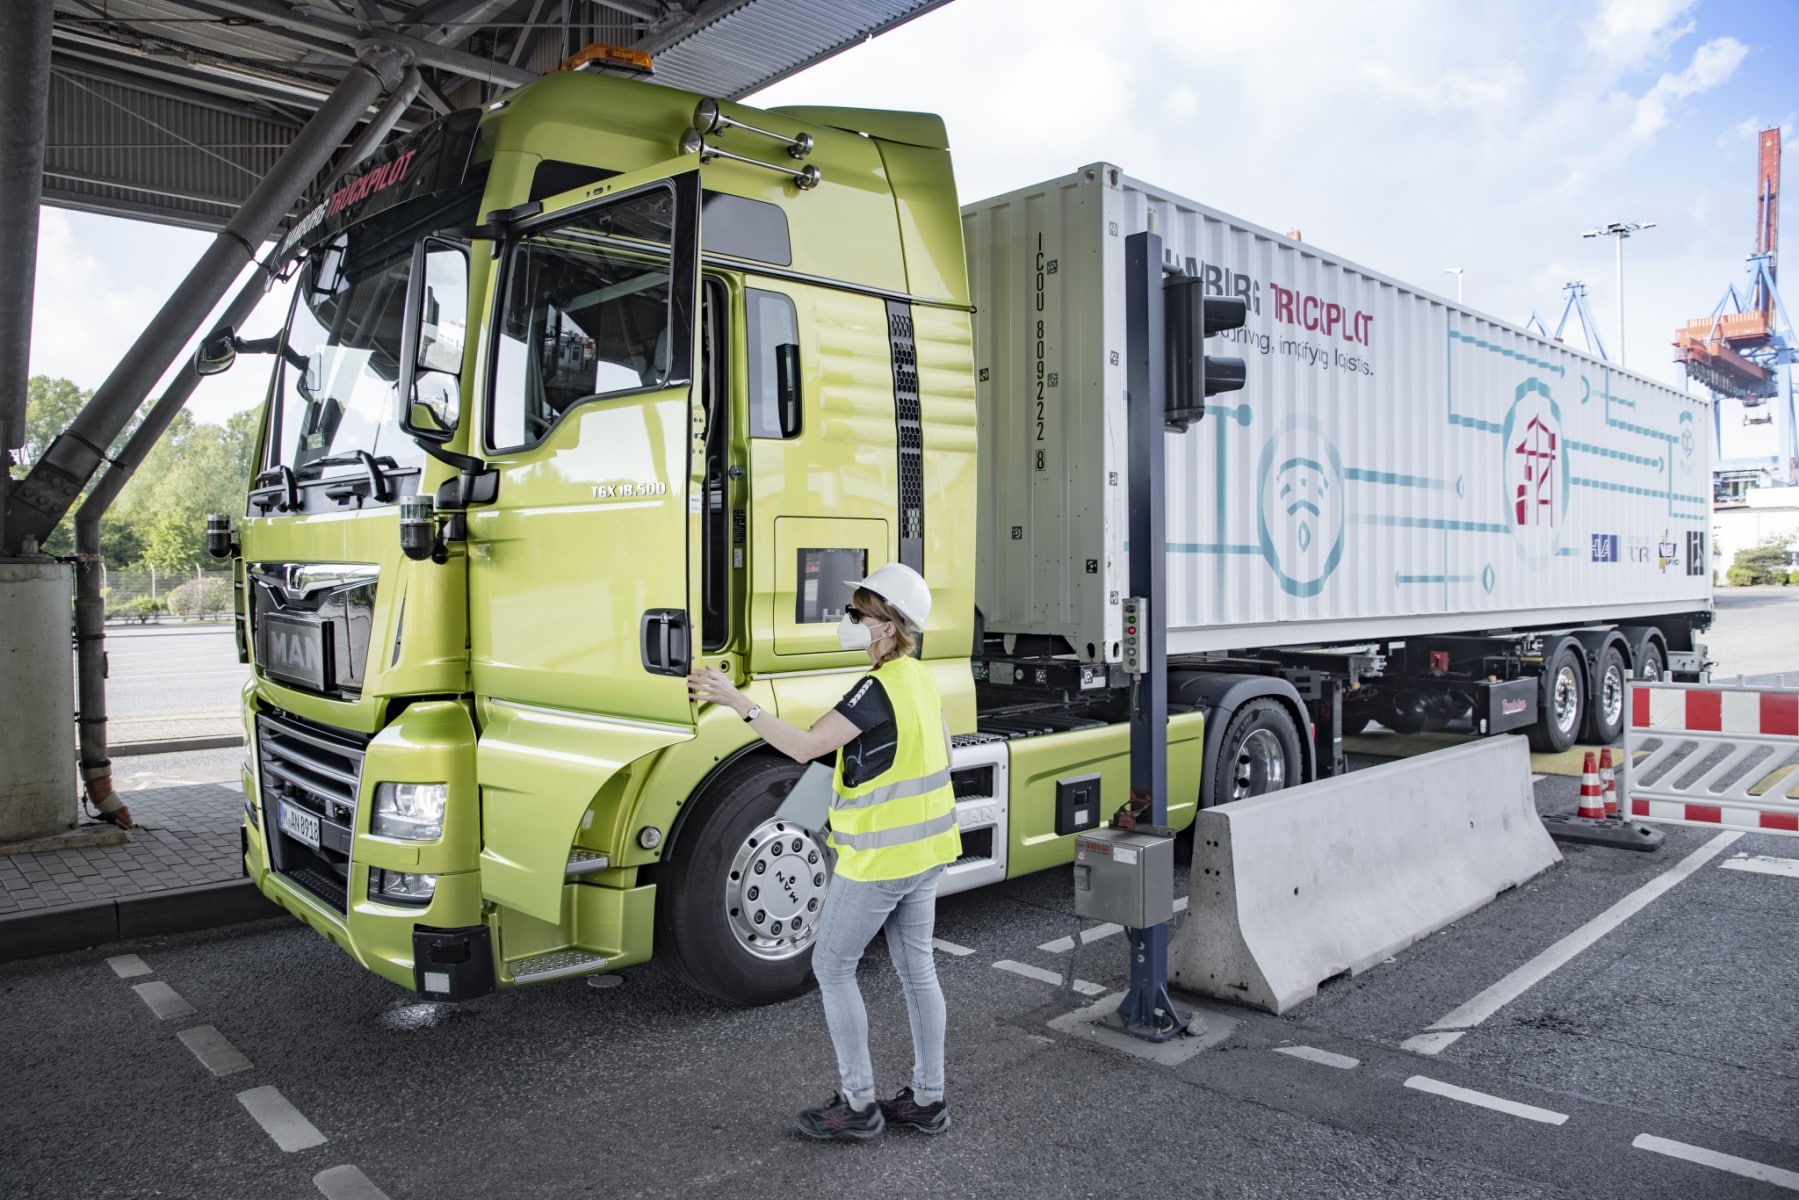 De toekomst van vrachtvervoer: MAN en HHLA pioniers in Logistics 4.0 met de autonome Hamburg TruckPilot